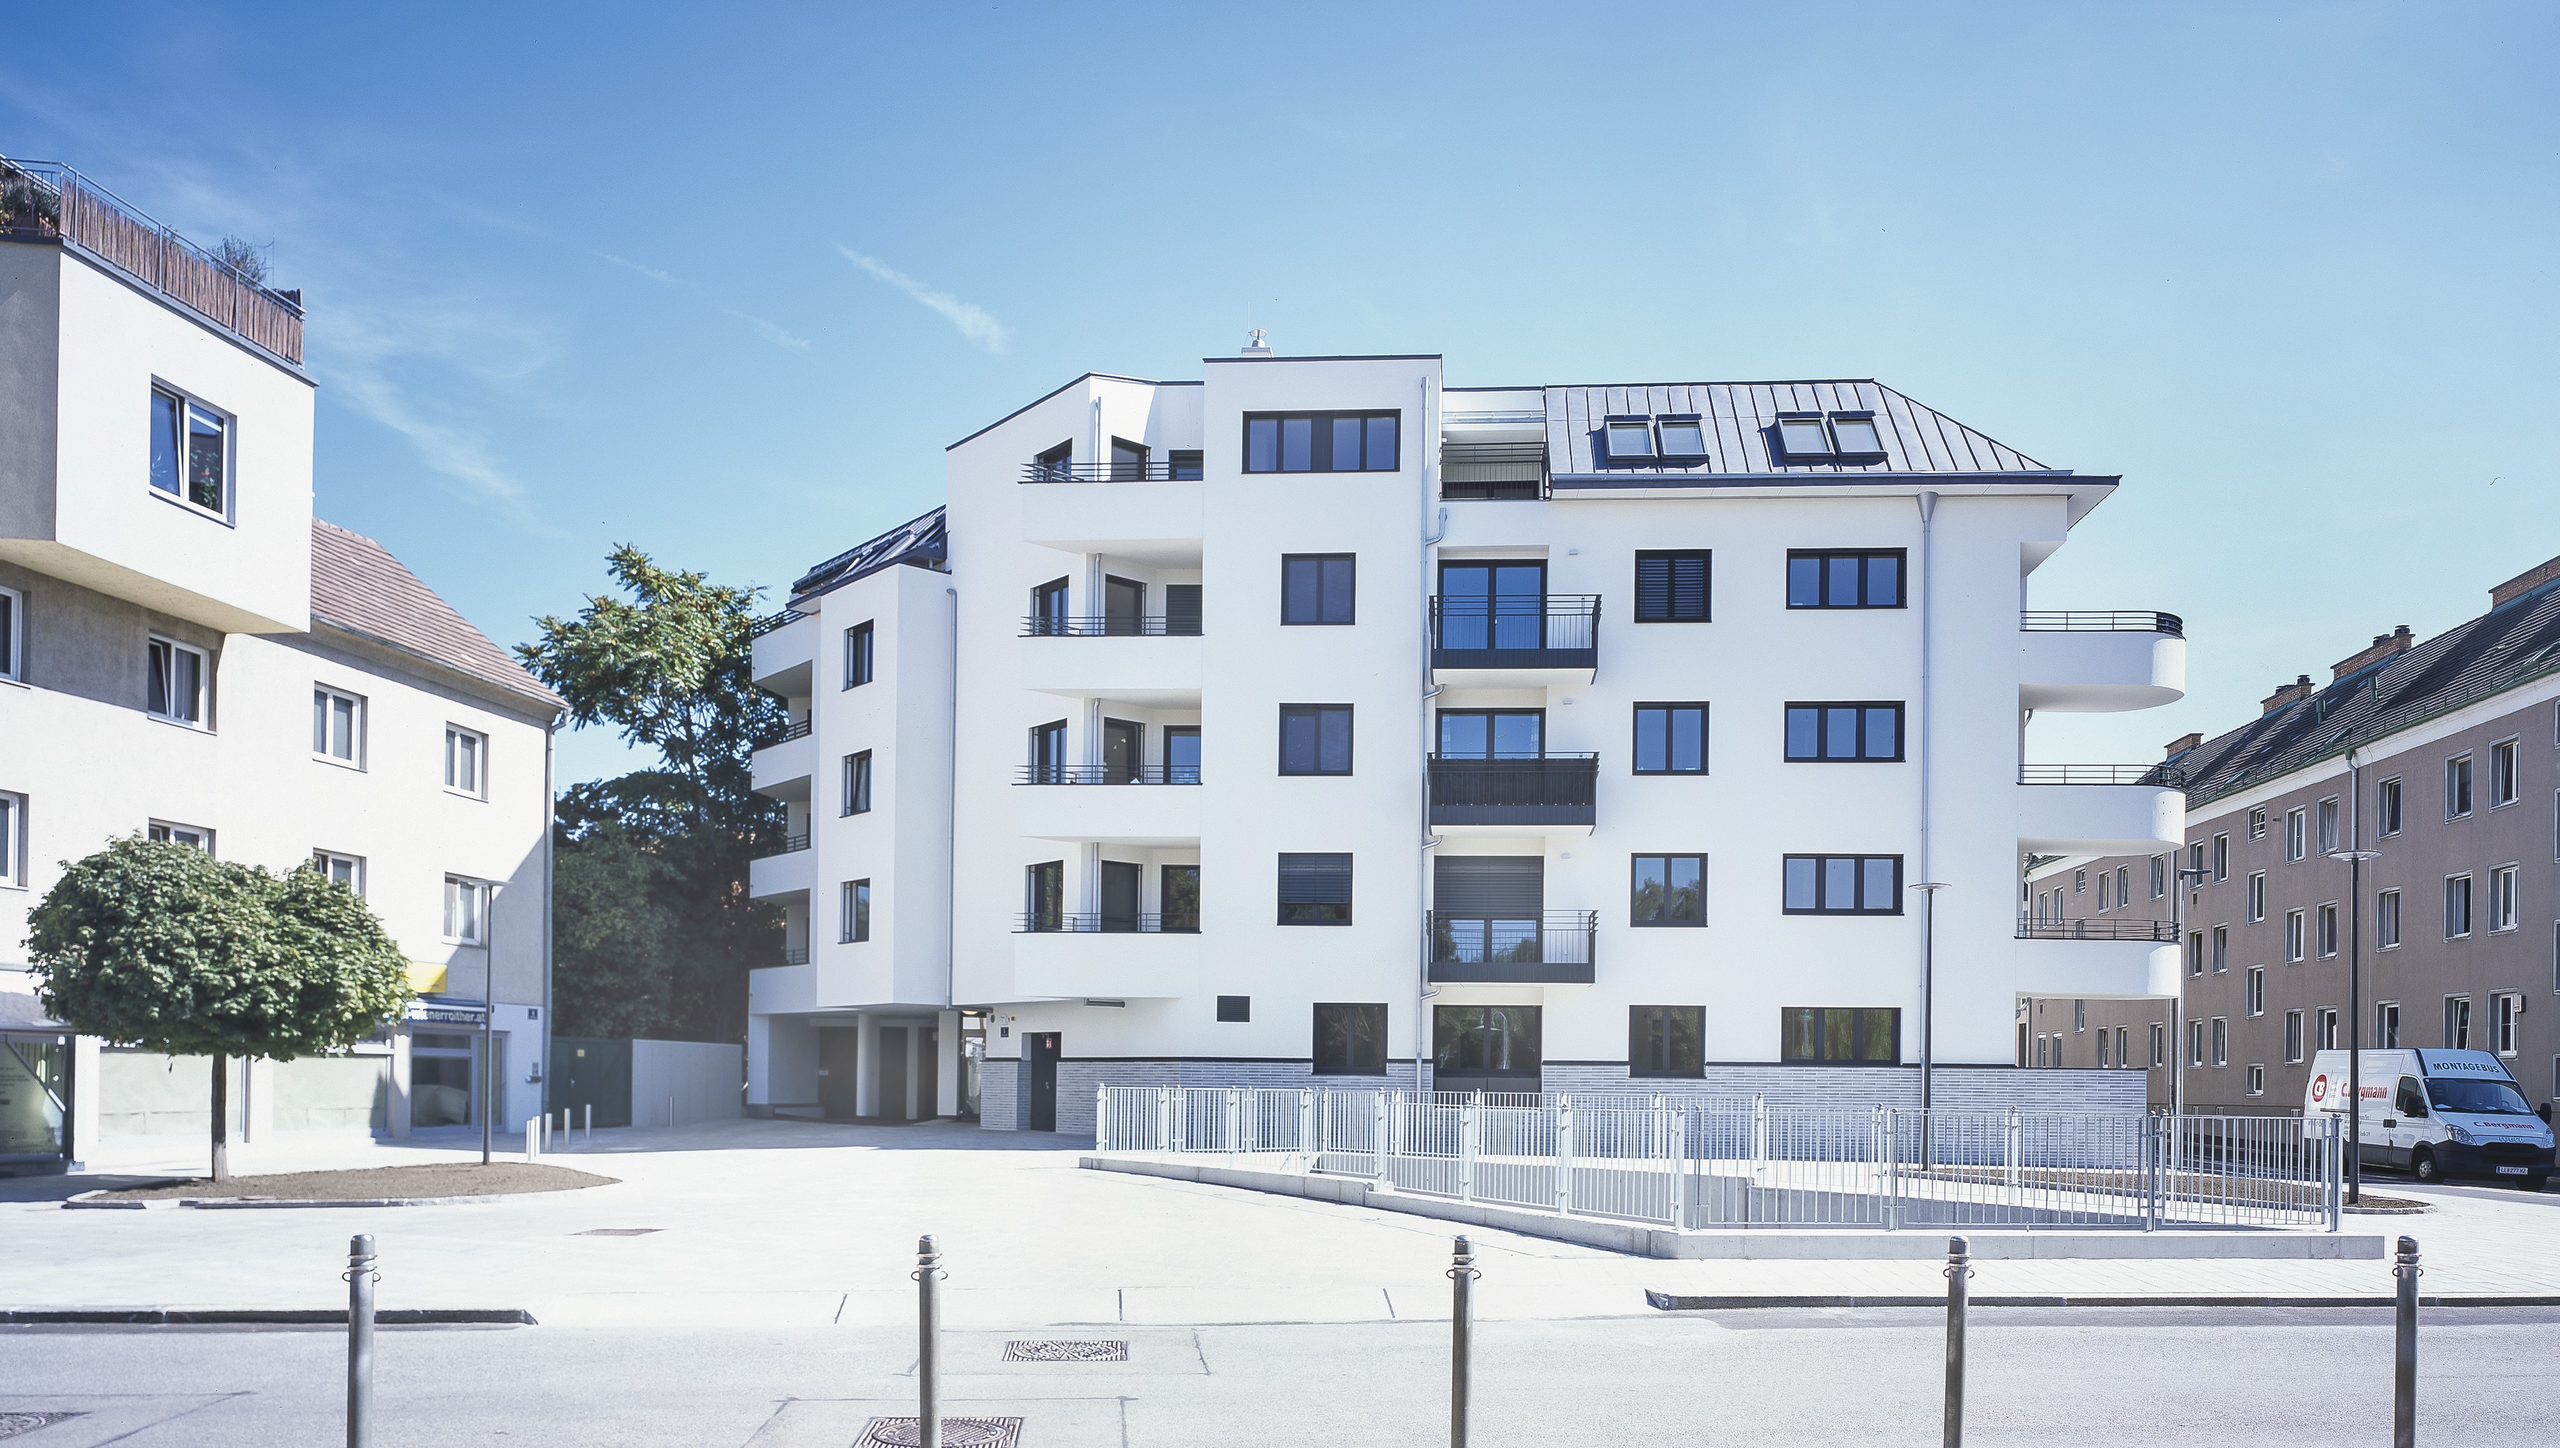 Familienwohnbau Niederösterreich - Makler für Immobilien in Wien